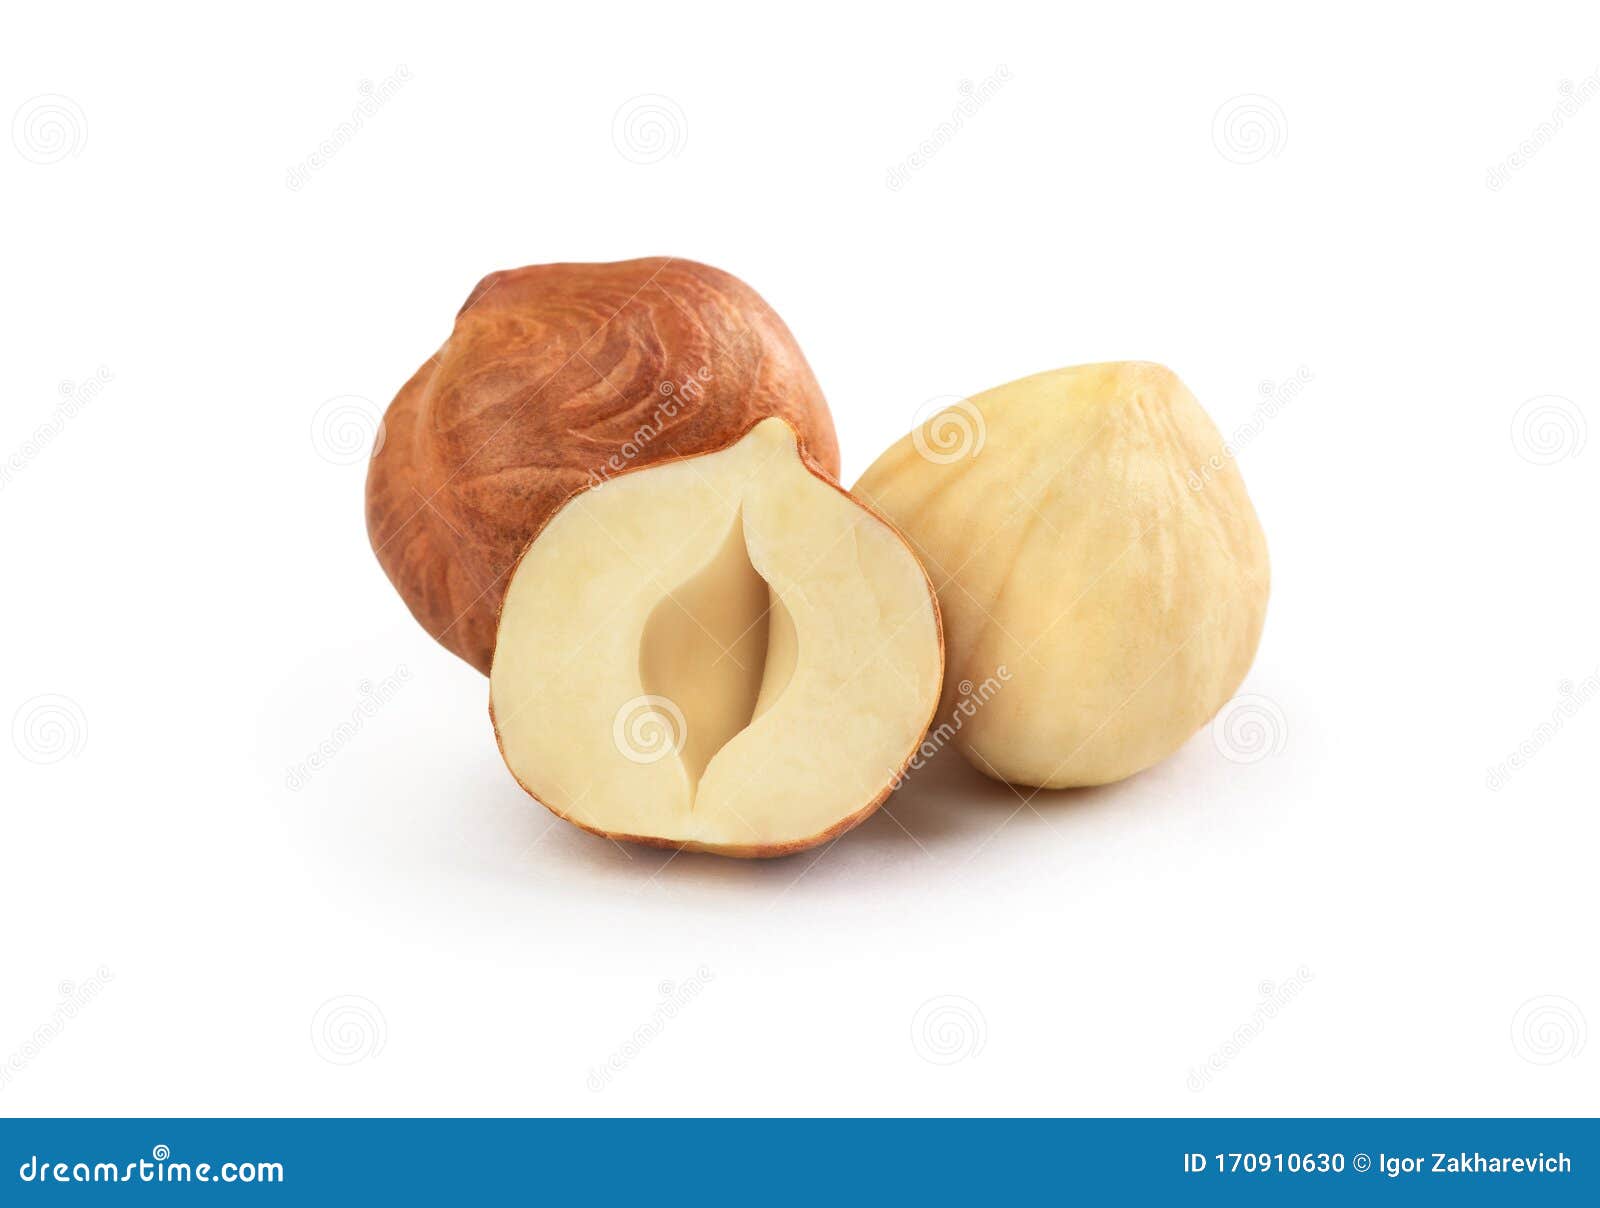 peeled hazelnuts on a white background